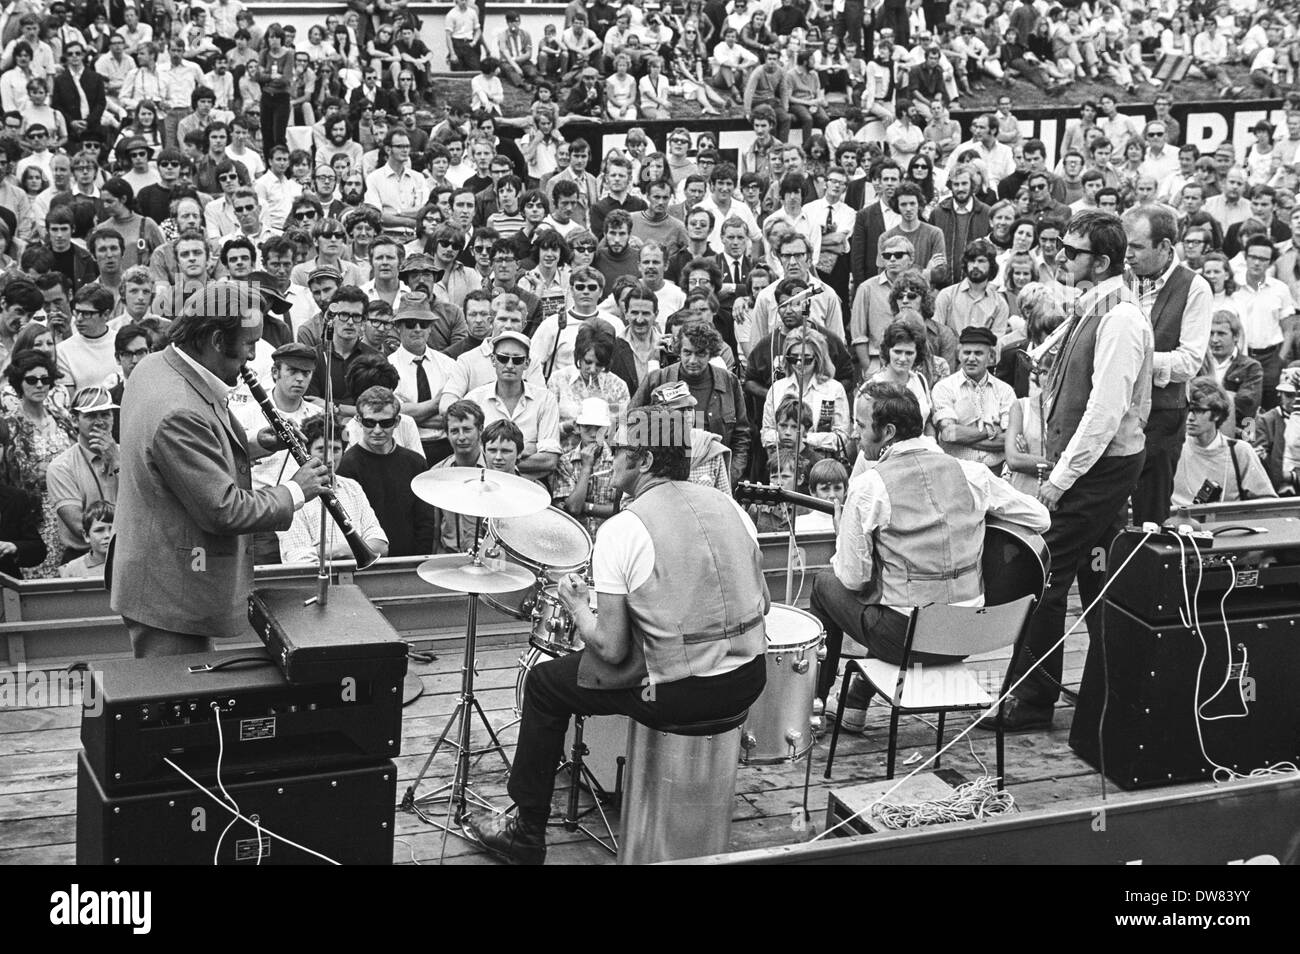 L'Acker Bilk jazz band effectuer après le Grand Prix de Grande-Bretagne 1970, tenue à Brands Hatch, près de Swanley à Kent, Angleterre, Royaume-Uni. Banque D'Images